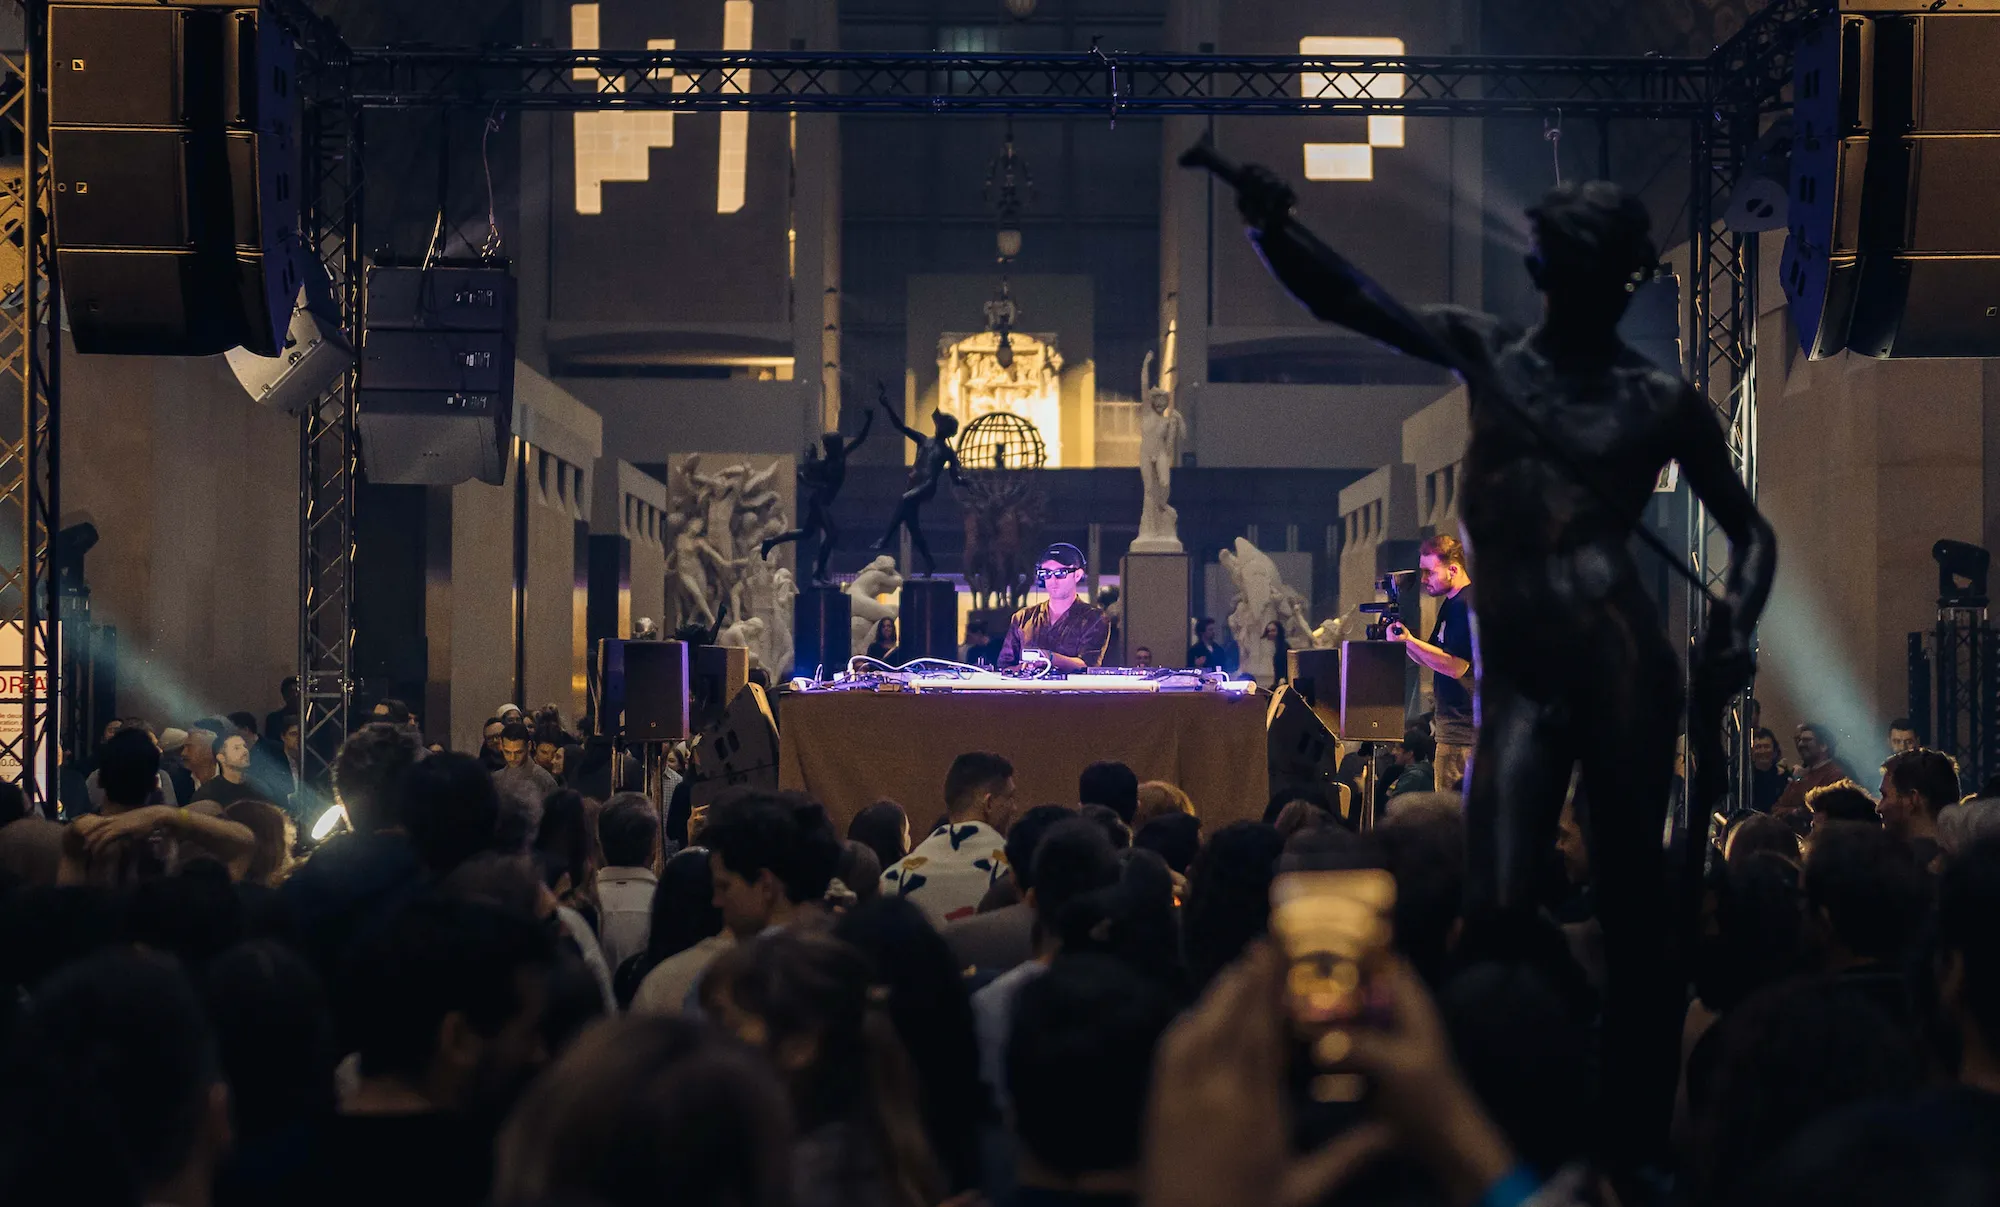 Agoria realizando un DJ set el sábado para celebrar el lanzamiento